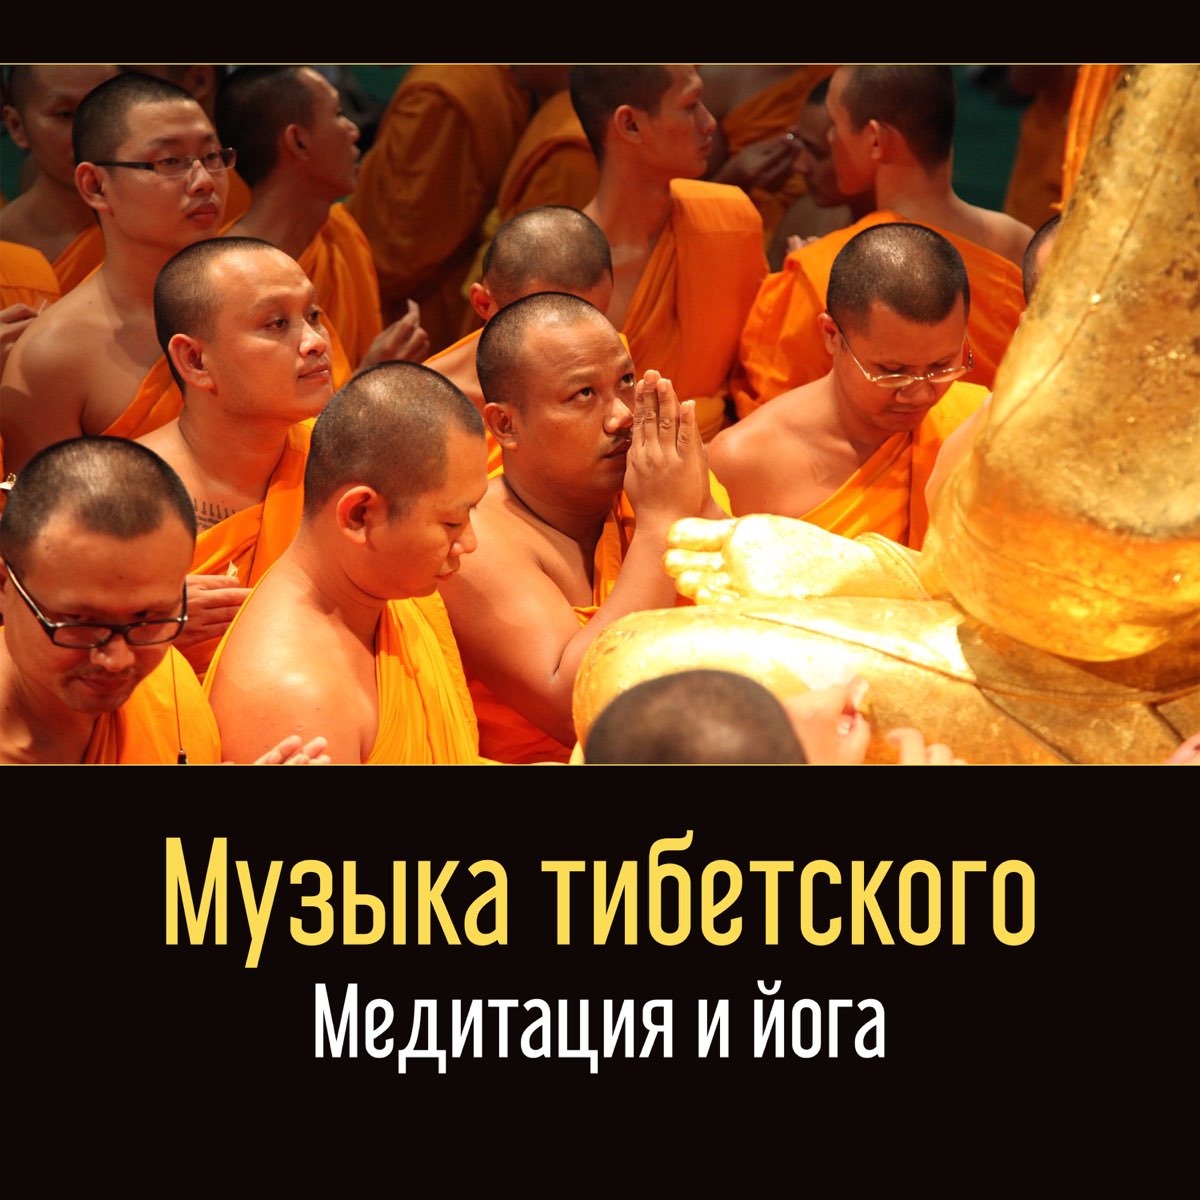 Слушать тибетскую медитацию. Тибет медитация. Тибетская музыка для медитации. Счастье по тибетски.